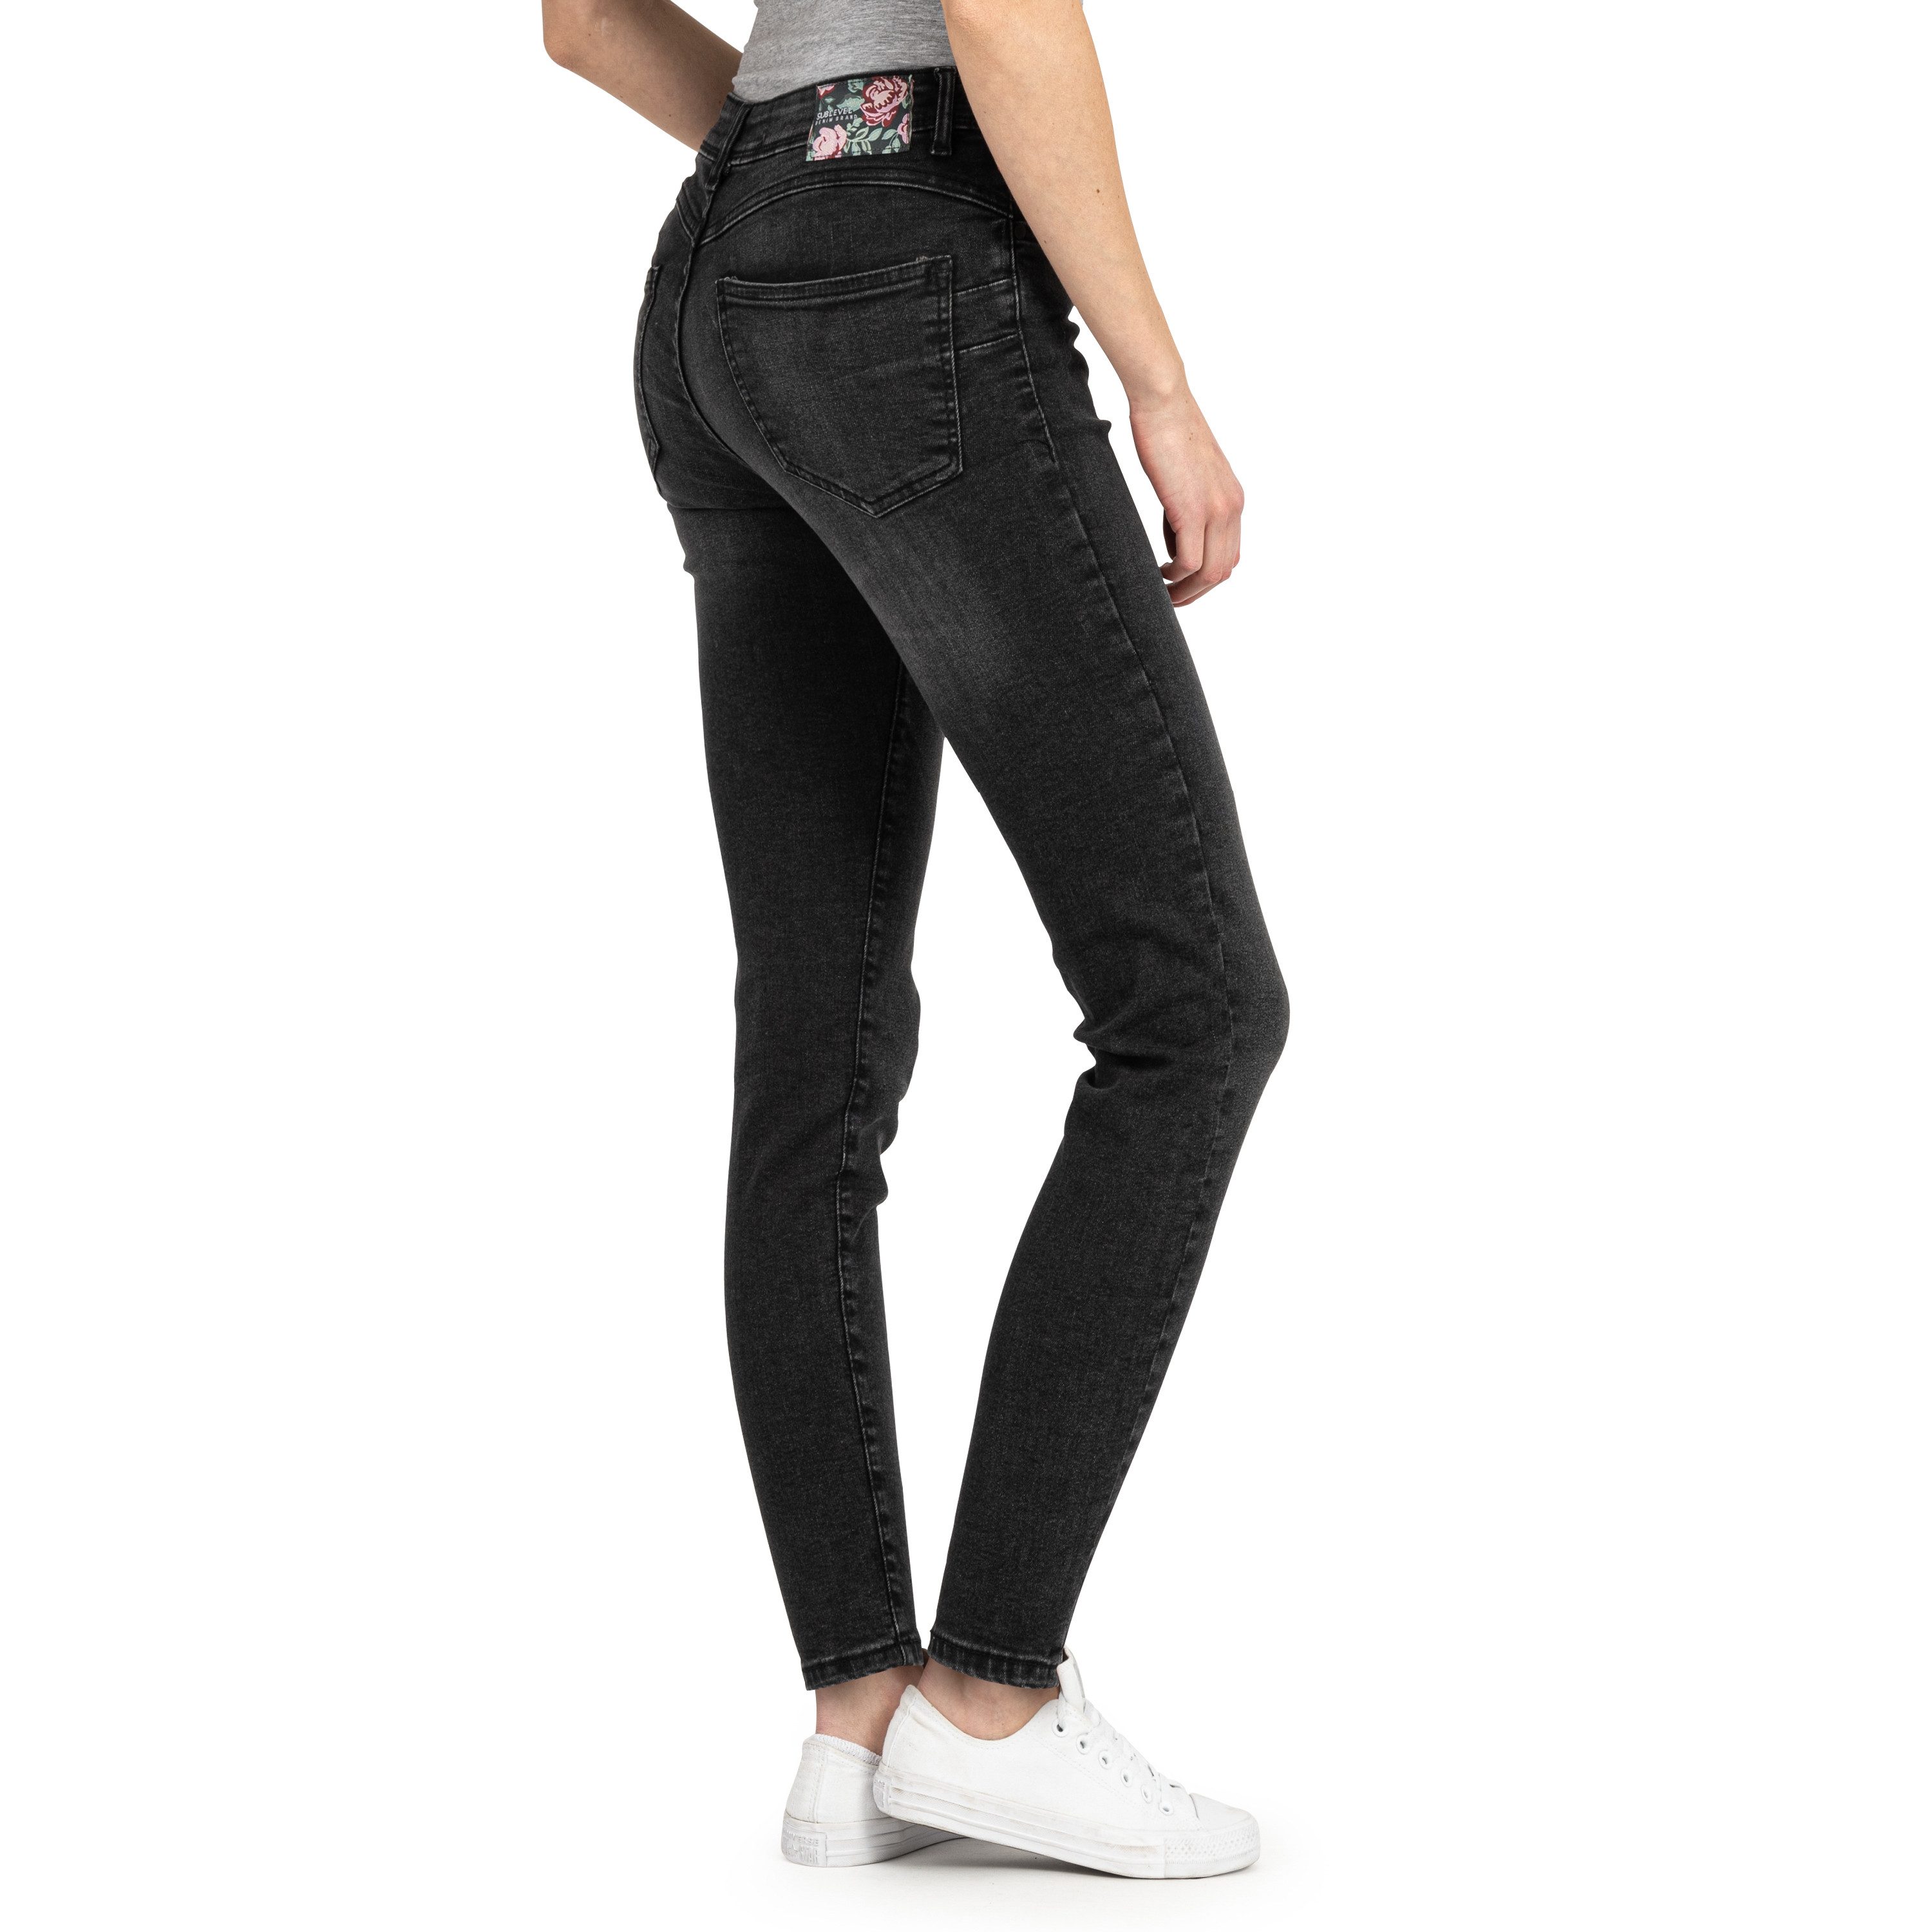 SUBLEVEL Slim-fit-Jeans Damen Jeans Skinny Slim Fit Jeanshose Hose Röhre Denim Stretch